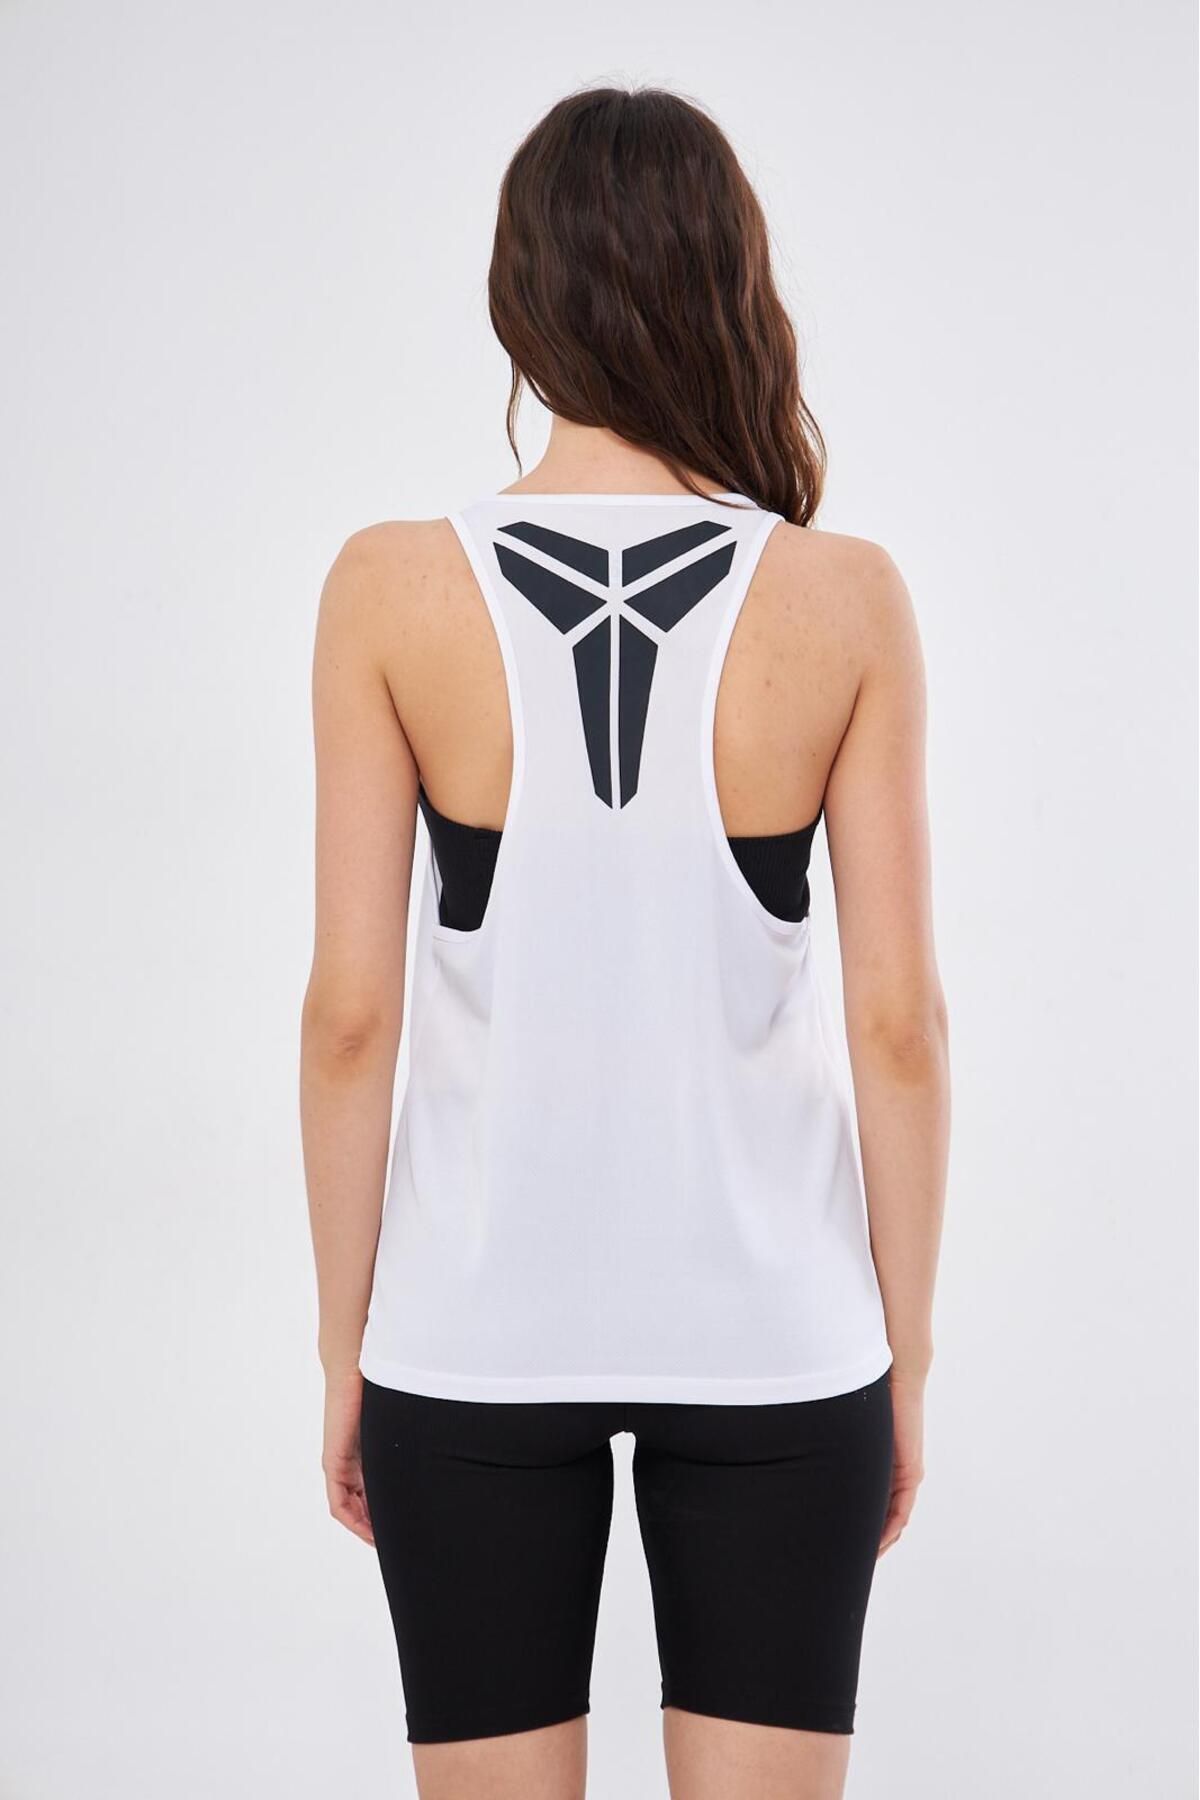 Moda Işık Sporcu Atleti Siyah Kobe Baskılı Beyaz Renk Kappa Kumaş